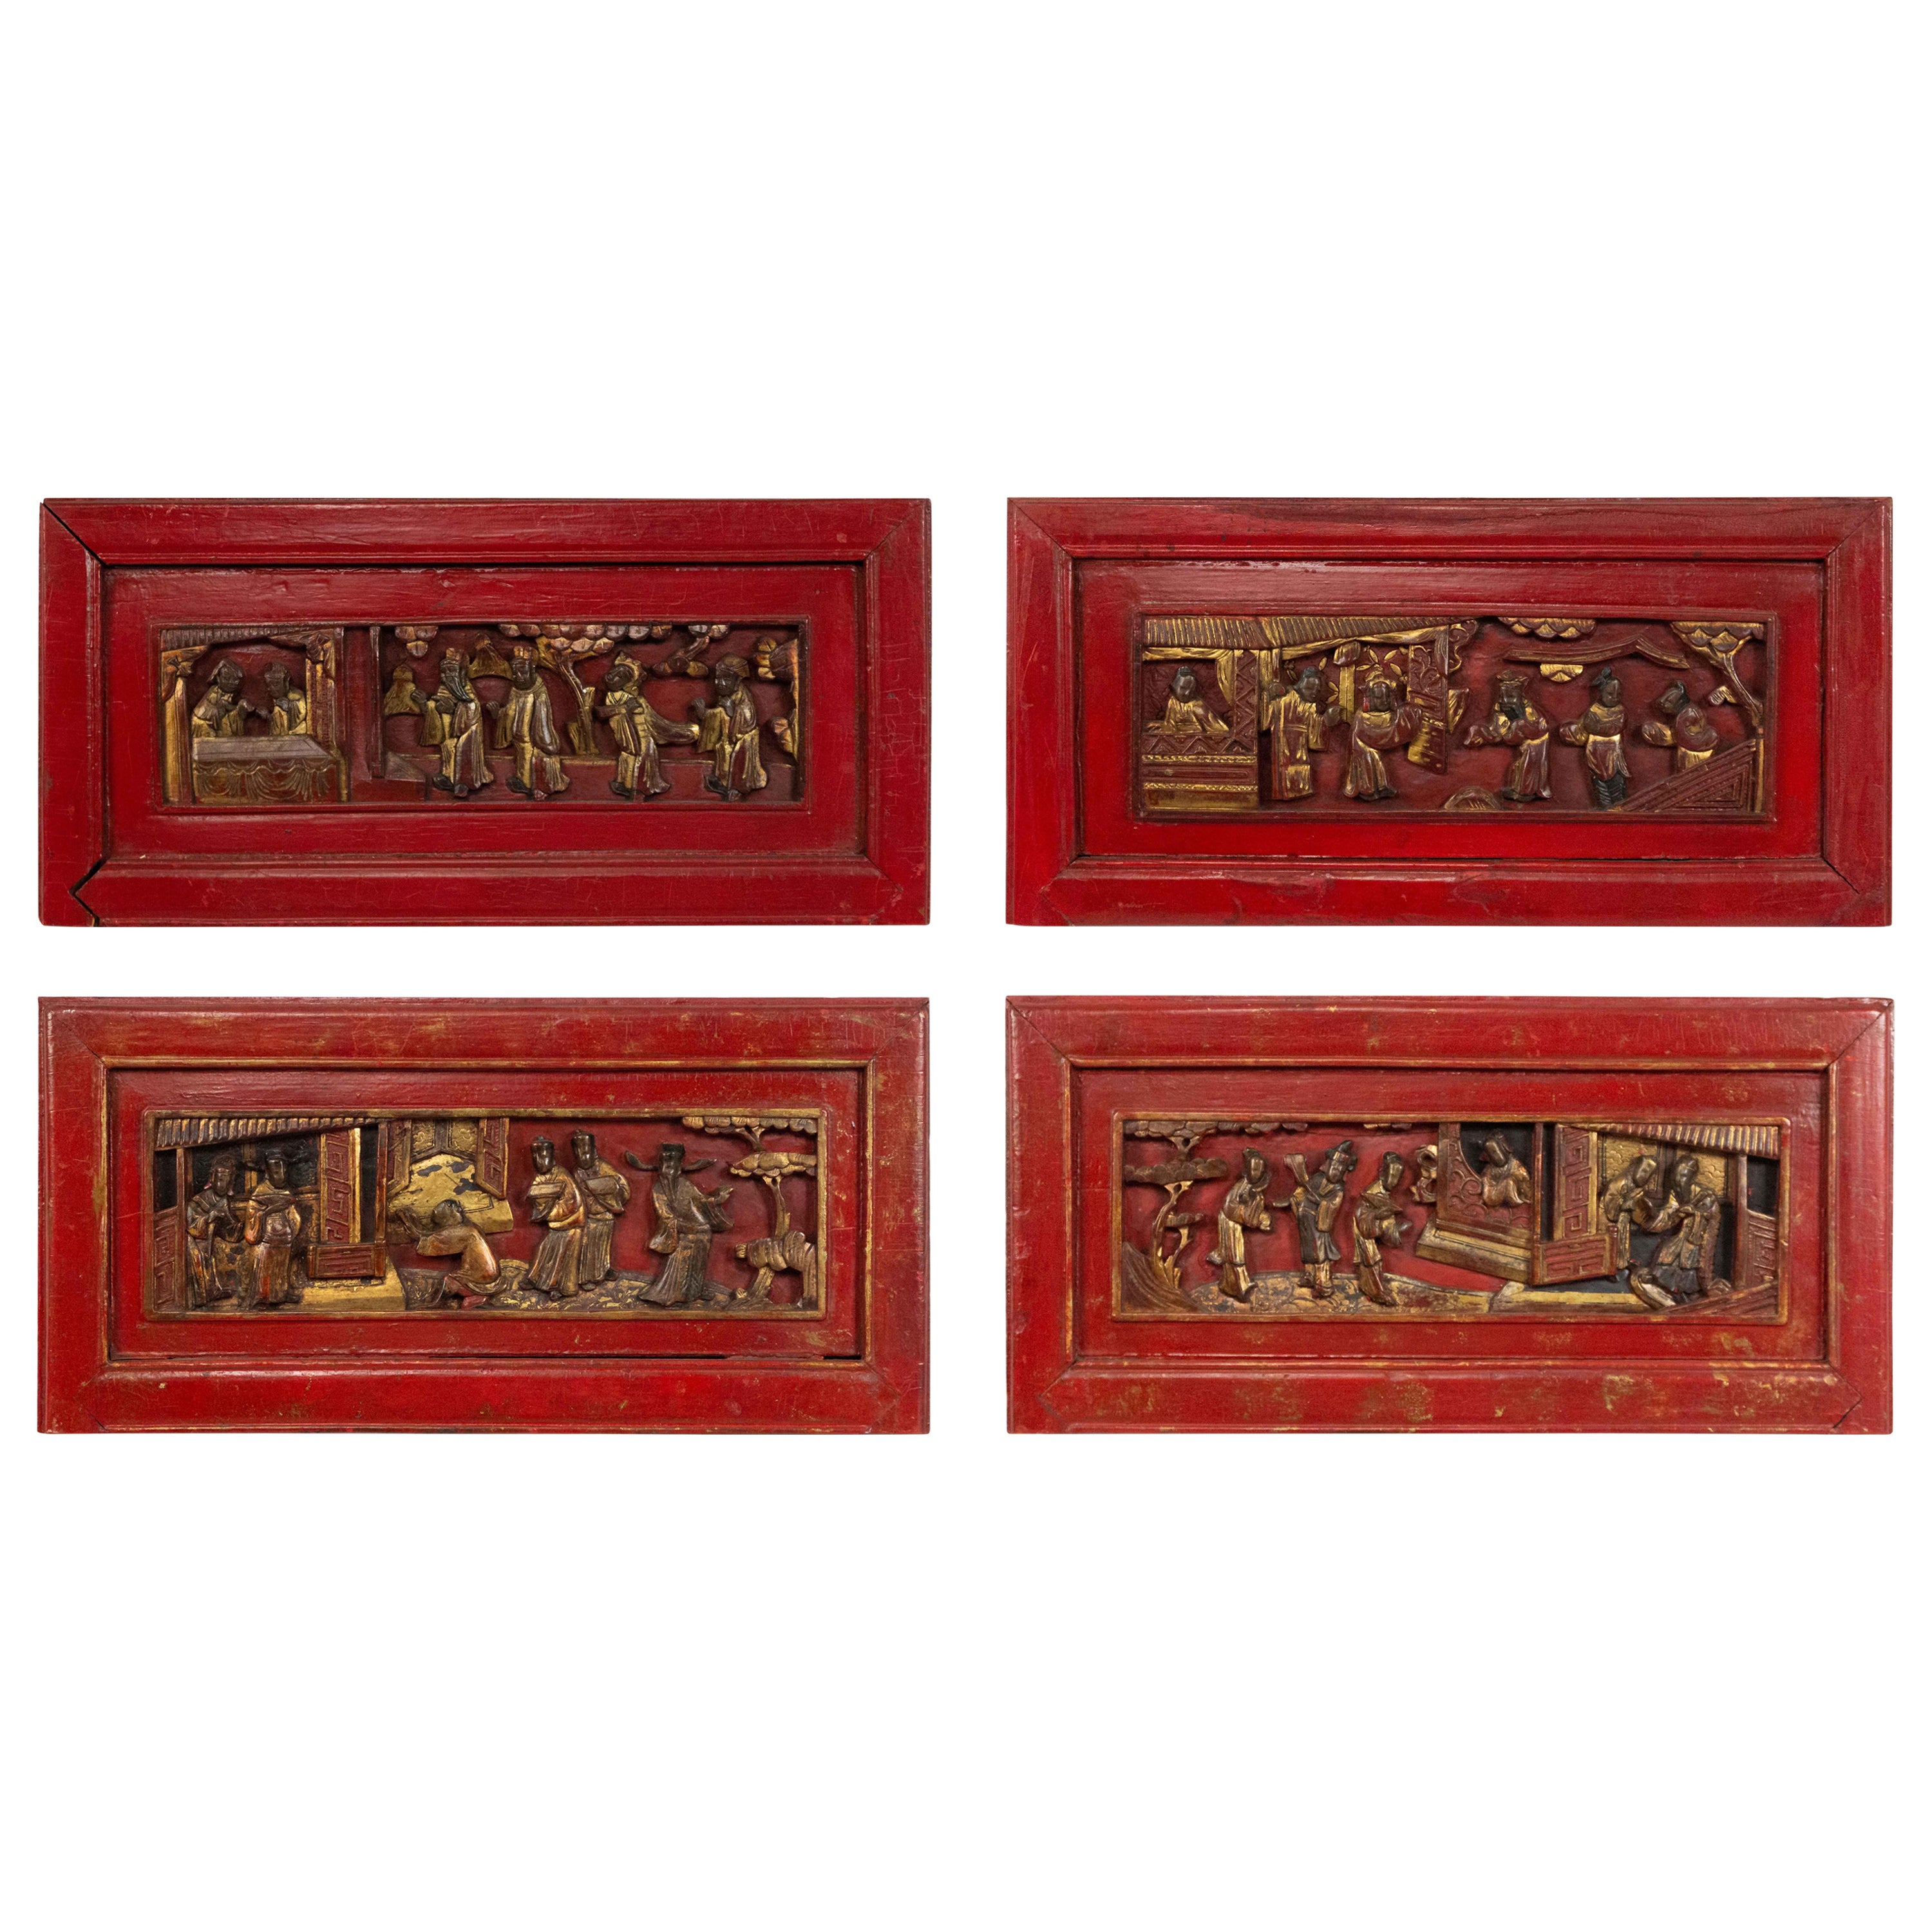 Chinesische lackierte geschnitzte Wandtafeln, Chinesisch